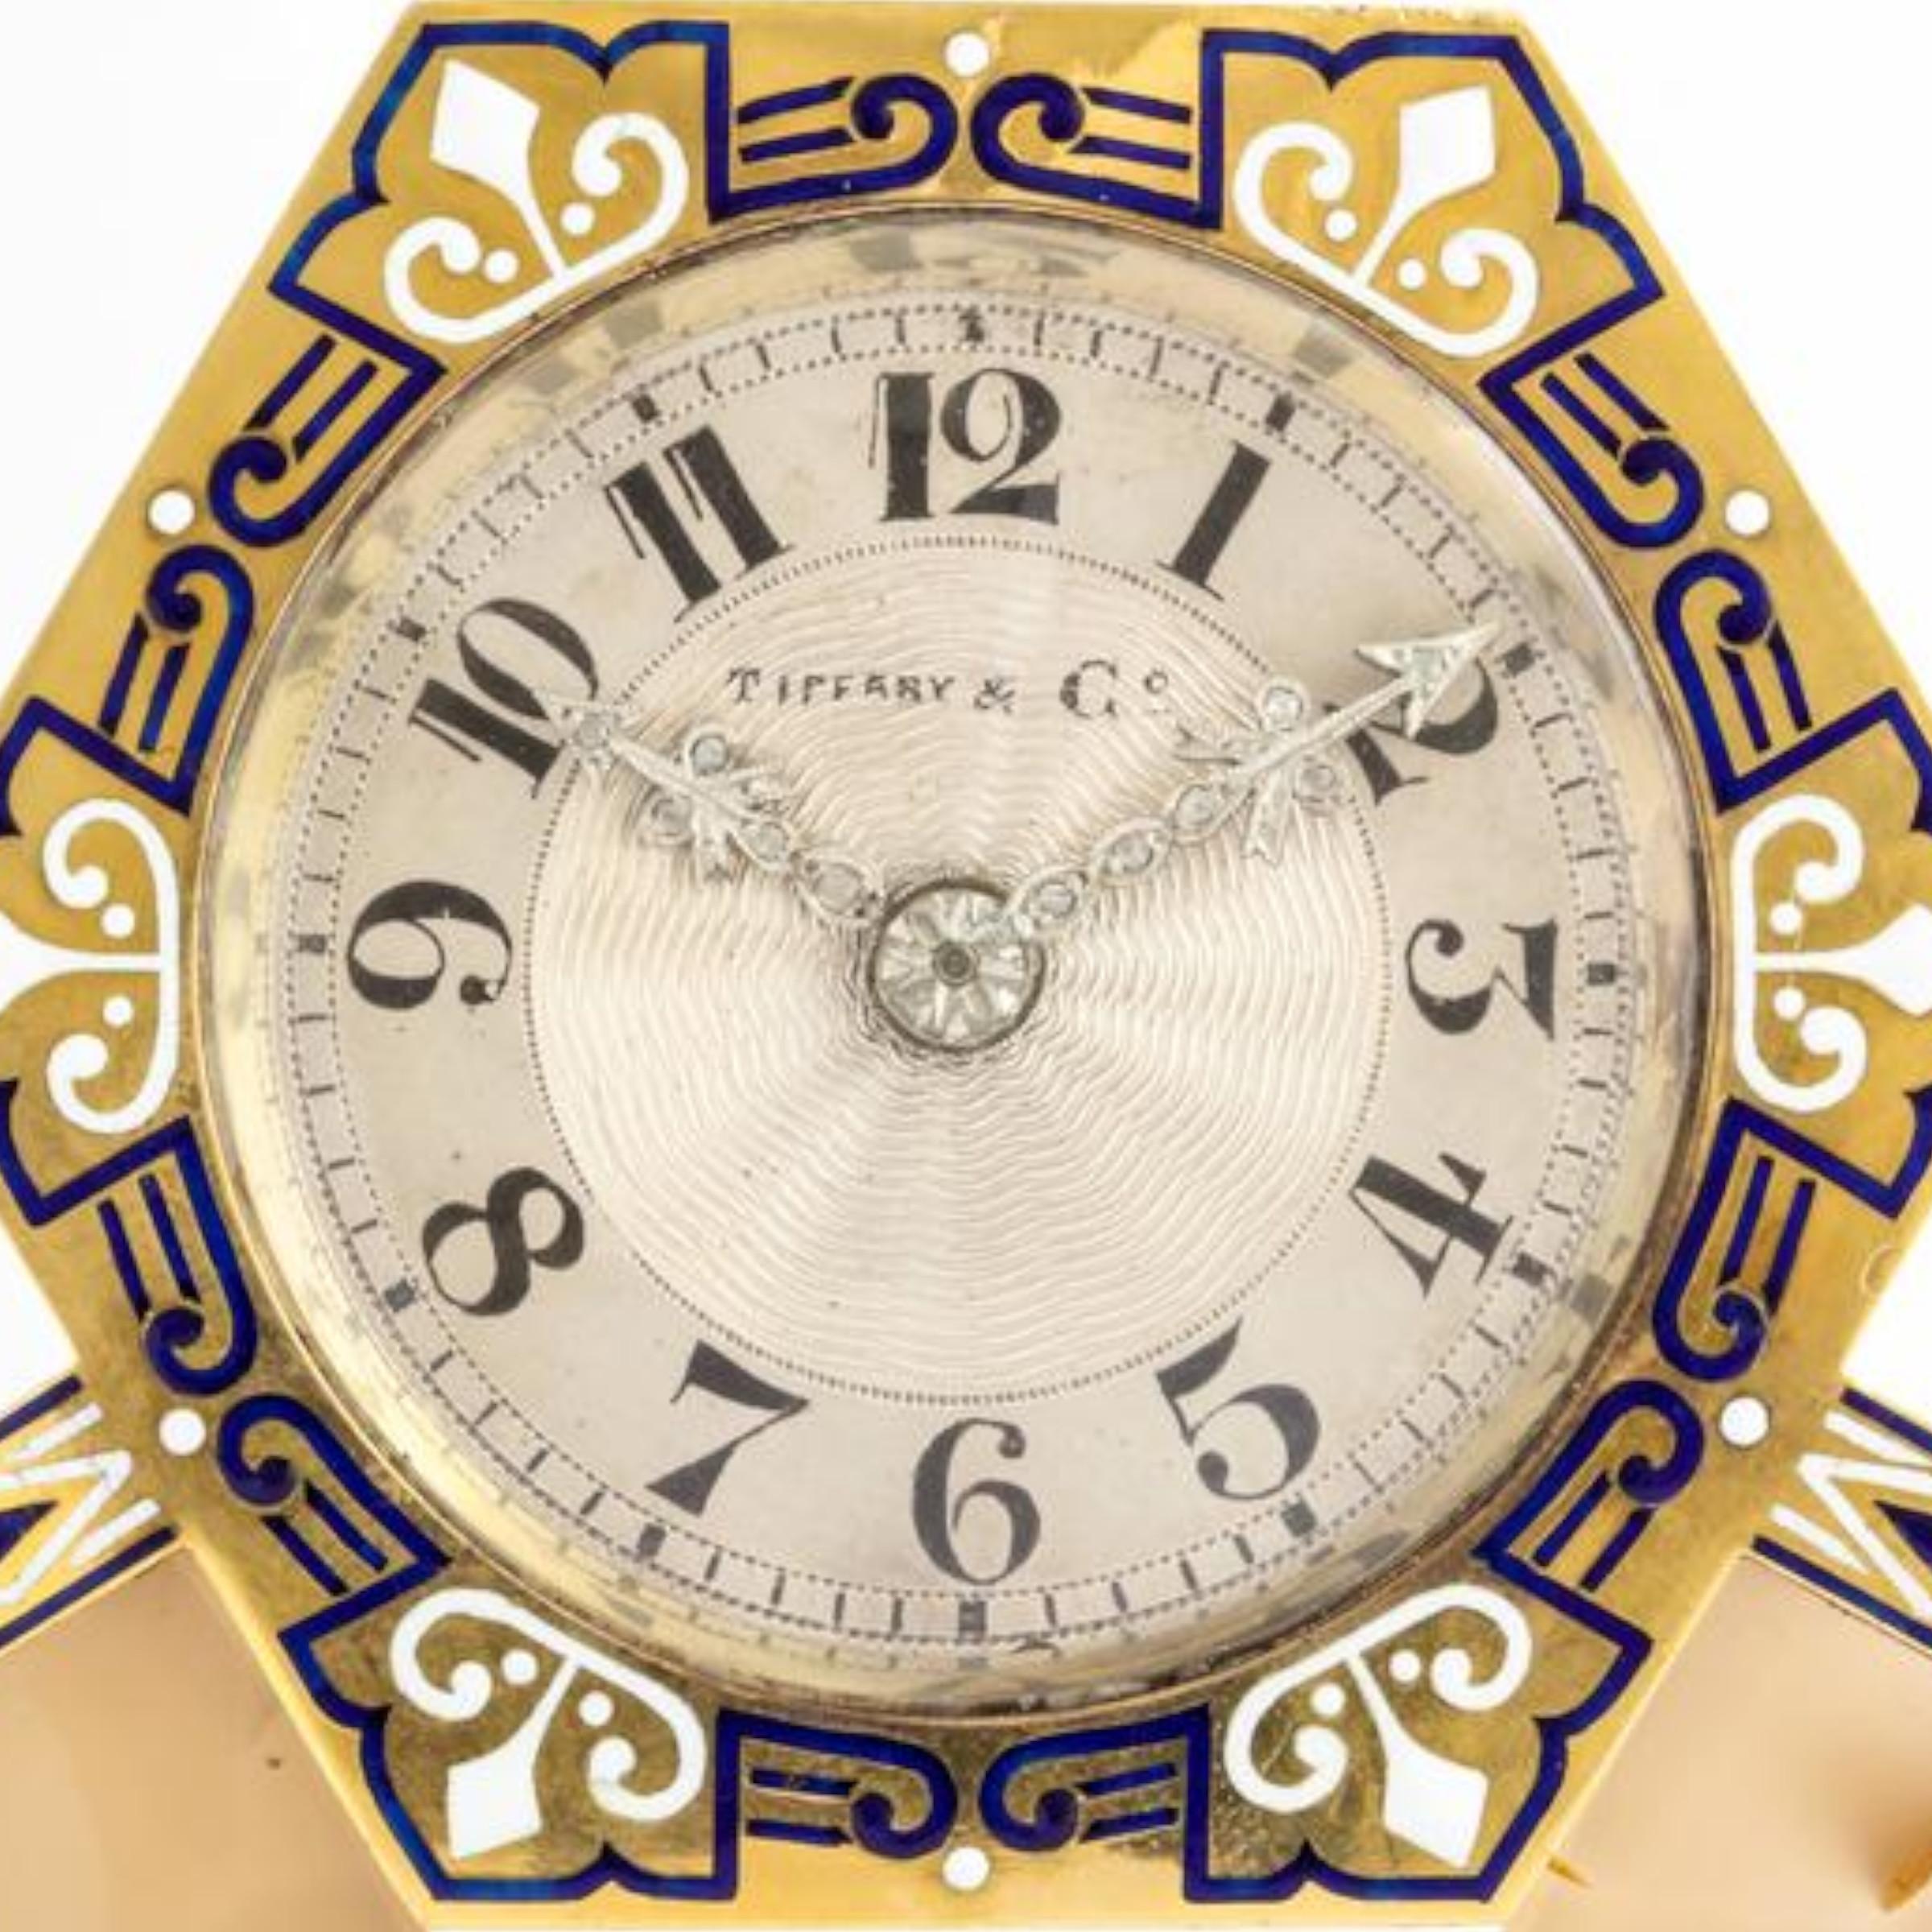 Art Deco Tiffany und Co Uhr 

Bestehend aus: Gold, Silber, geschliffenem Hartstein, geschliffenen Diamanten und blauem und weißem Emaille.

Hergestellt um 1925

Zifferblatt signiert Tiffany & Co. Französische